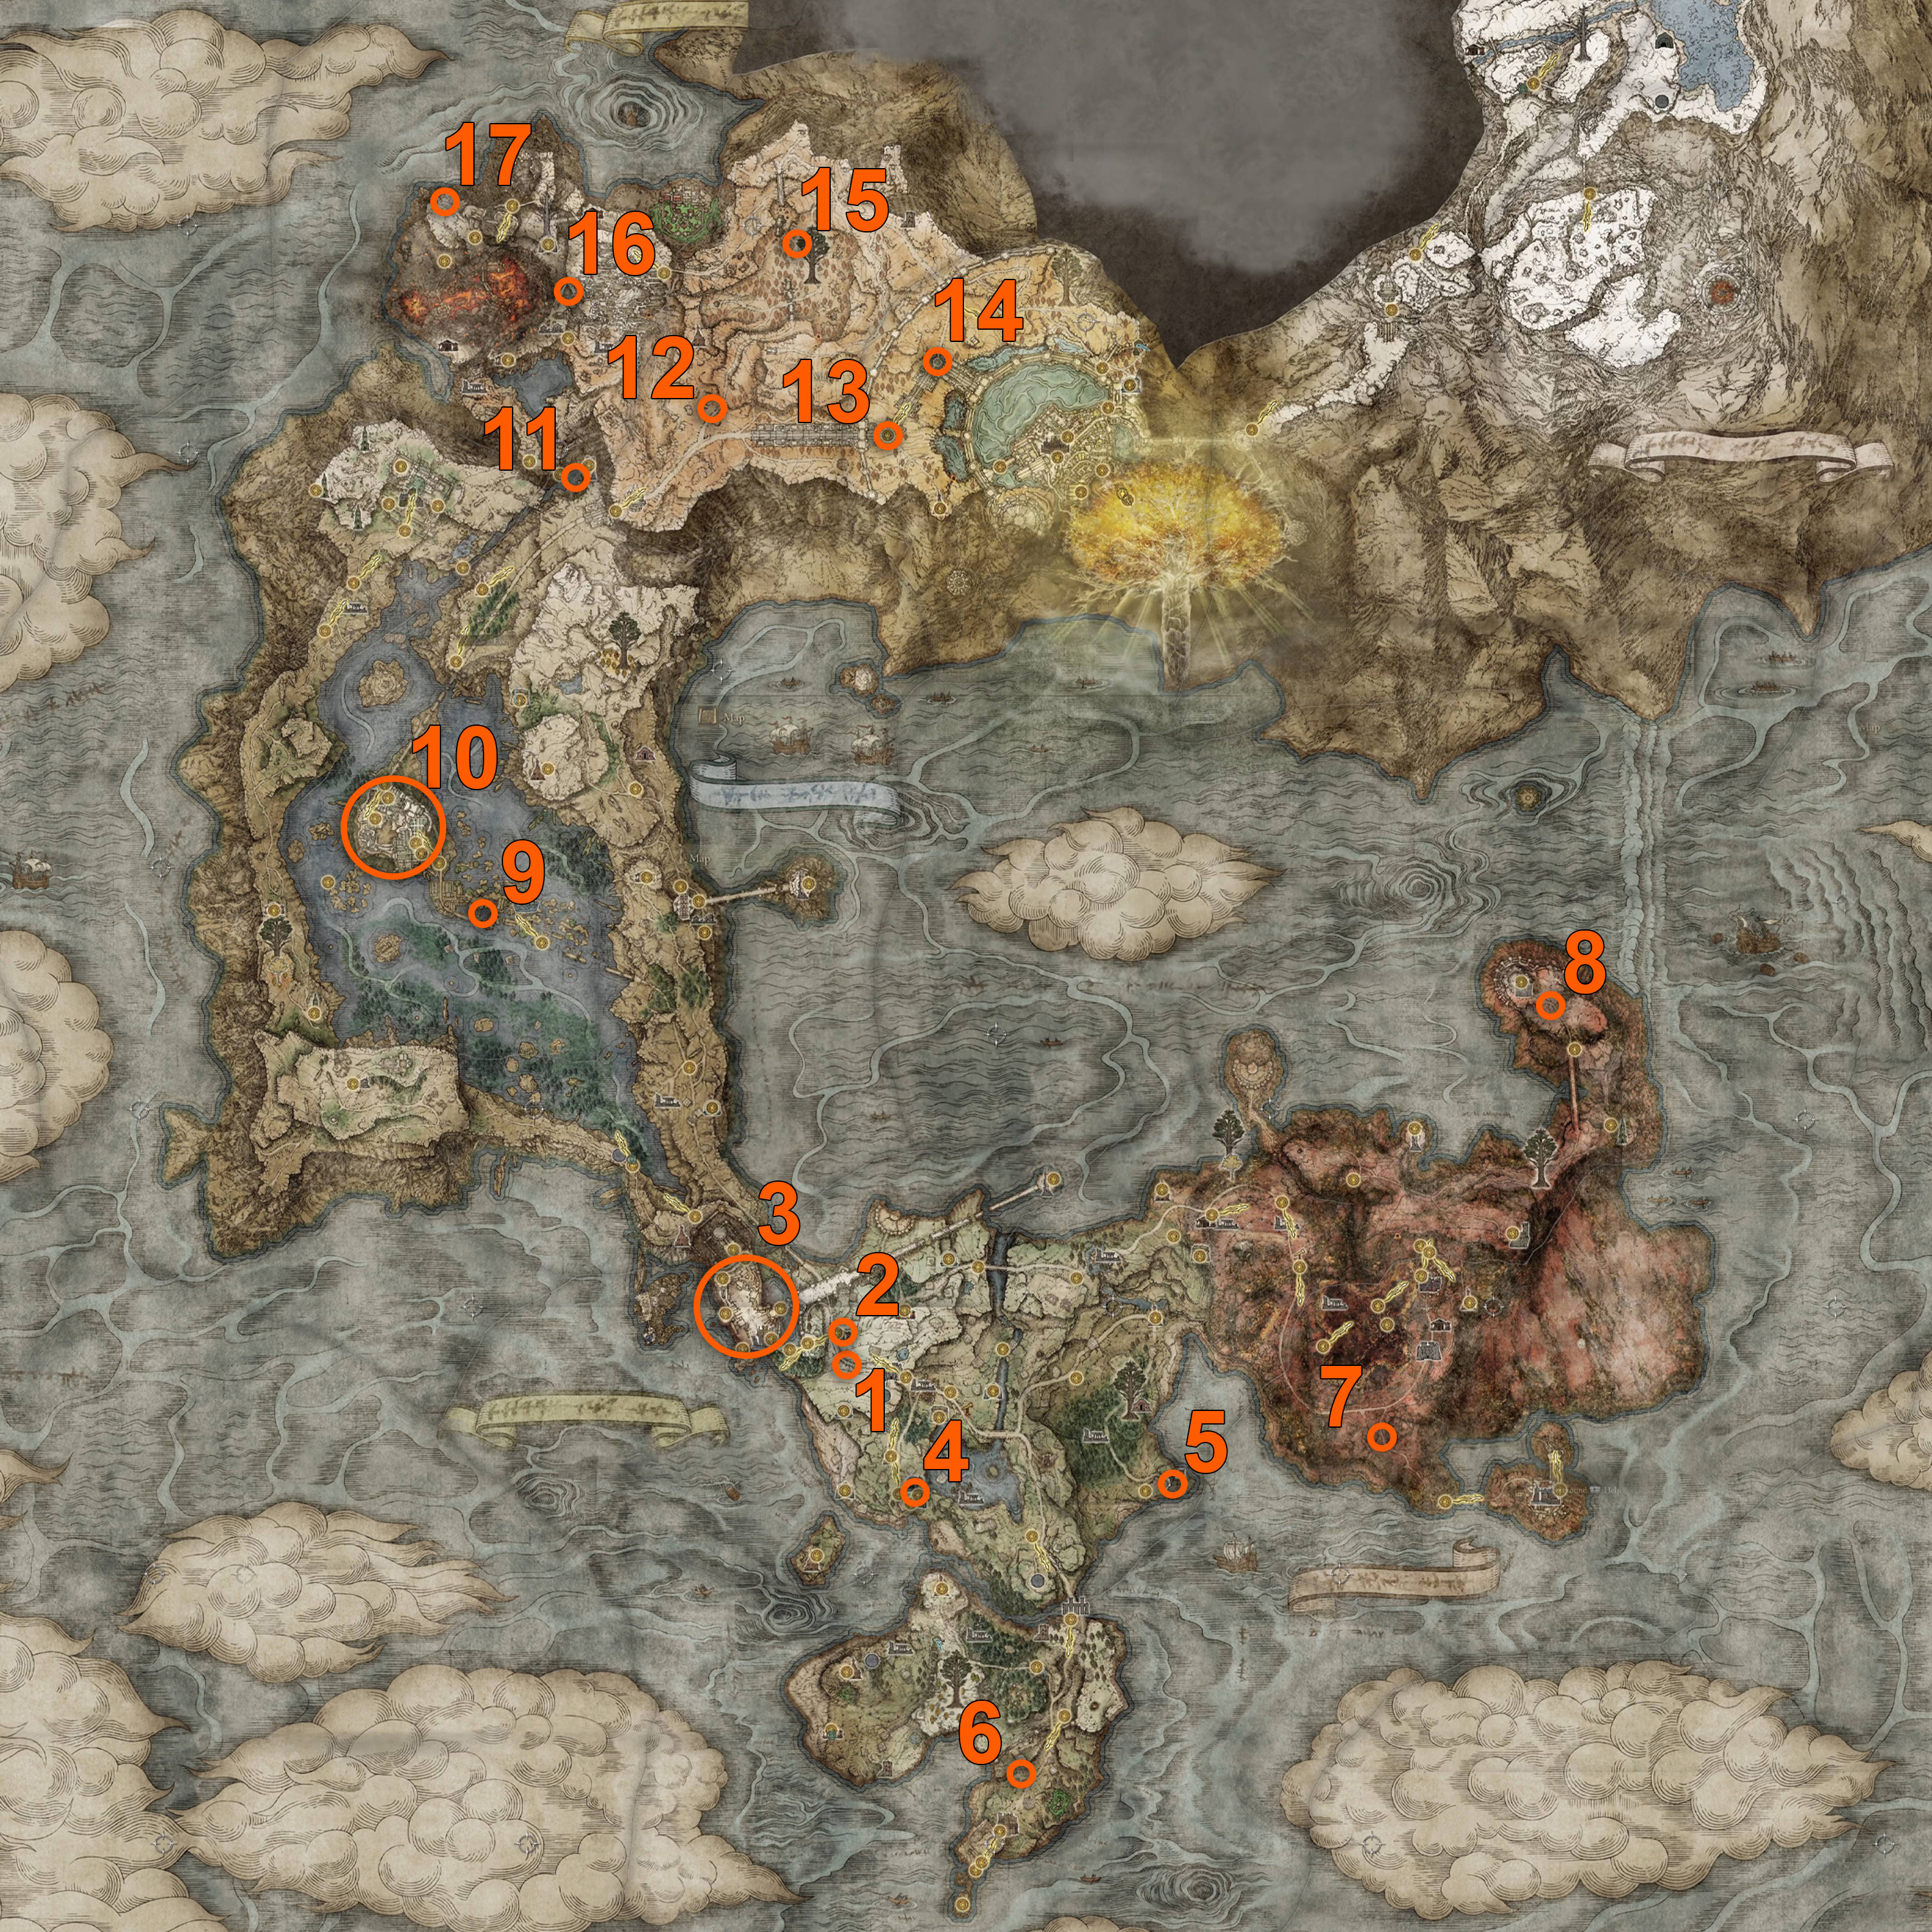 Elden Ring golden seeds map locations